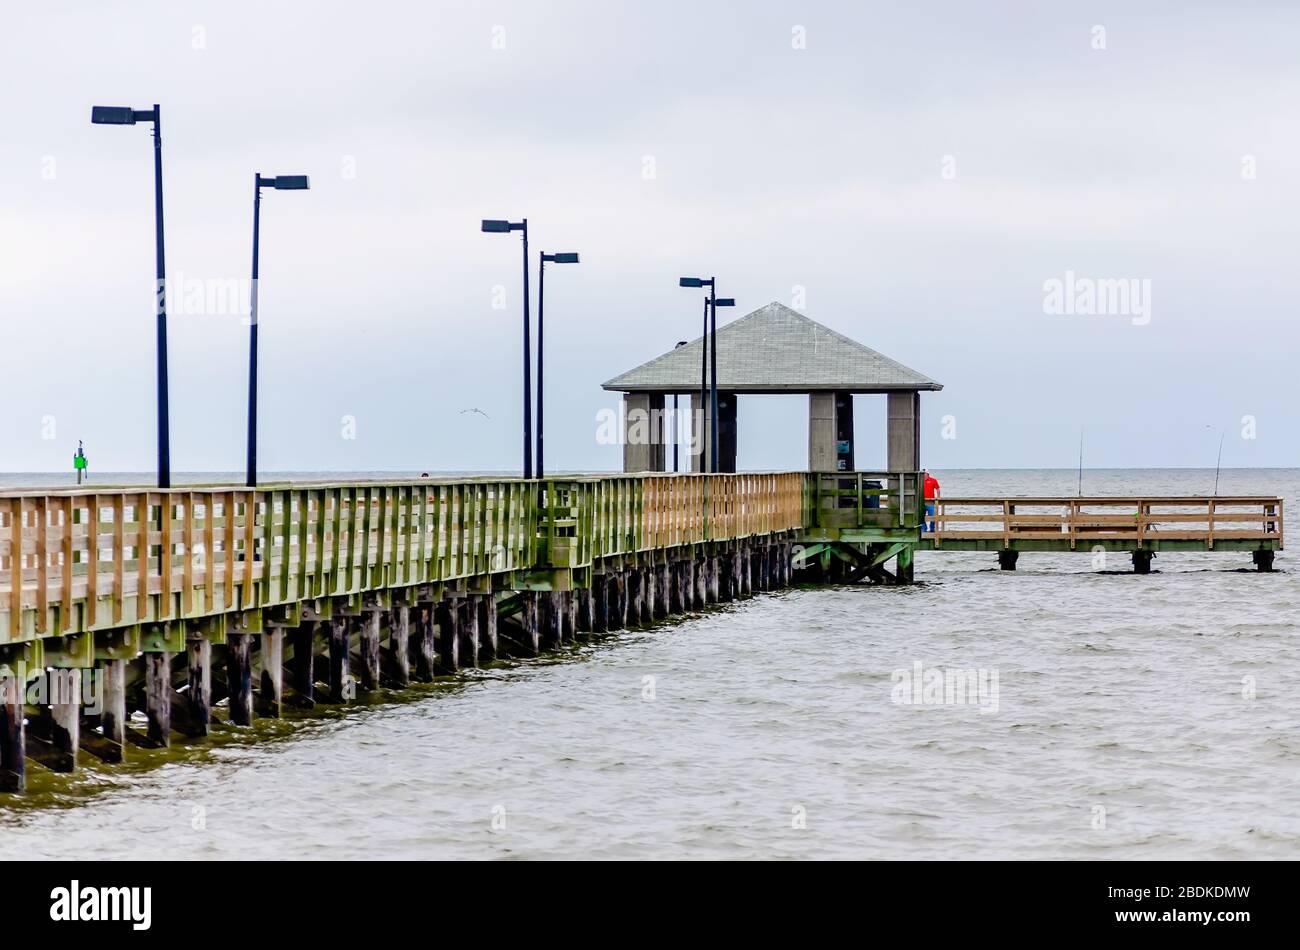 Lighthouse Pier est vide et Biloxi Beach est fermé pendant la pandémie COVID-19, le 7 avril 2020, à Biloxi, au Mississippi. Banque D'Images